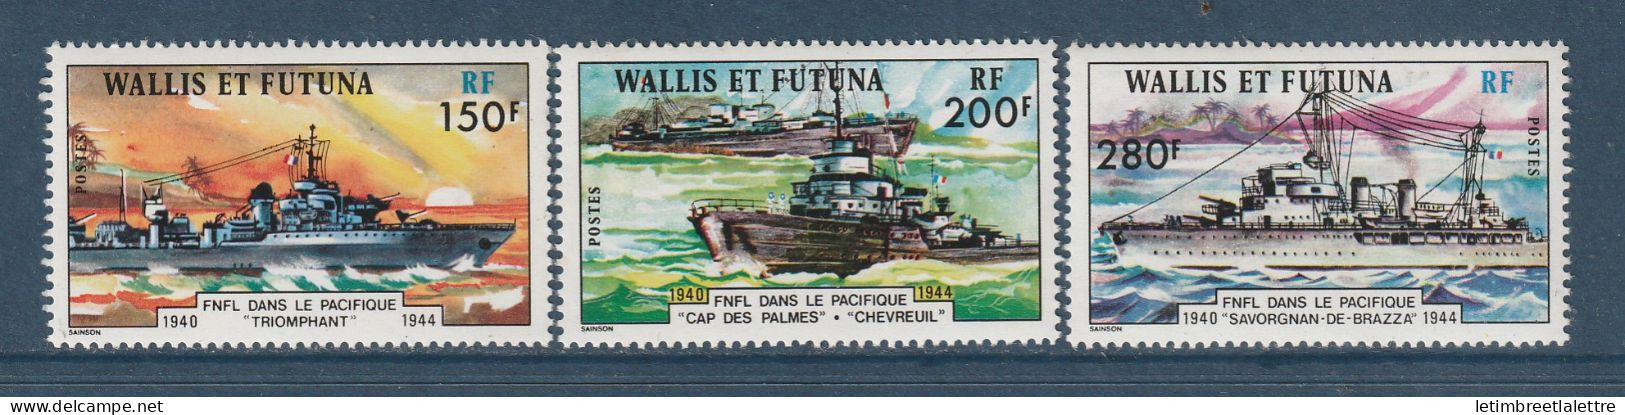 Wallis Et Futuna - YT N° 210 à 212 ** - Neuf Sans Charnière - 1978 - Ongebruikt